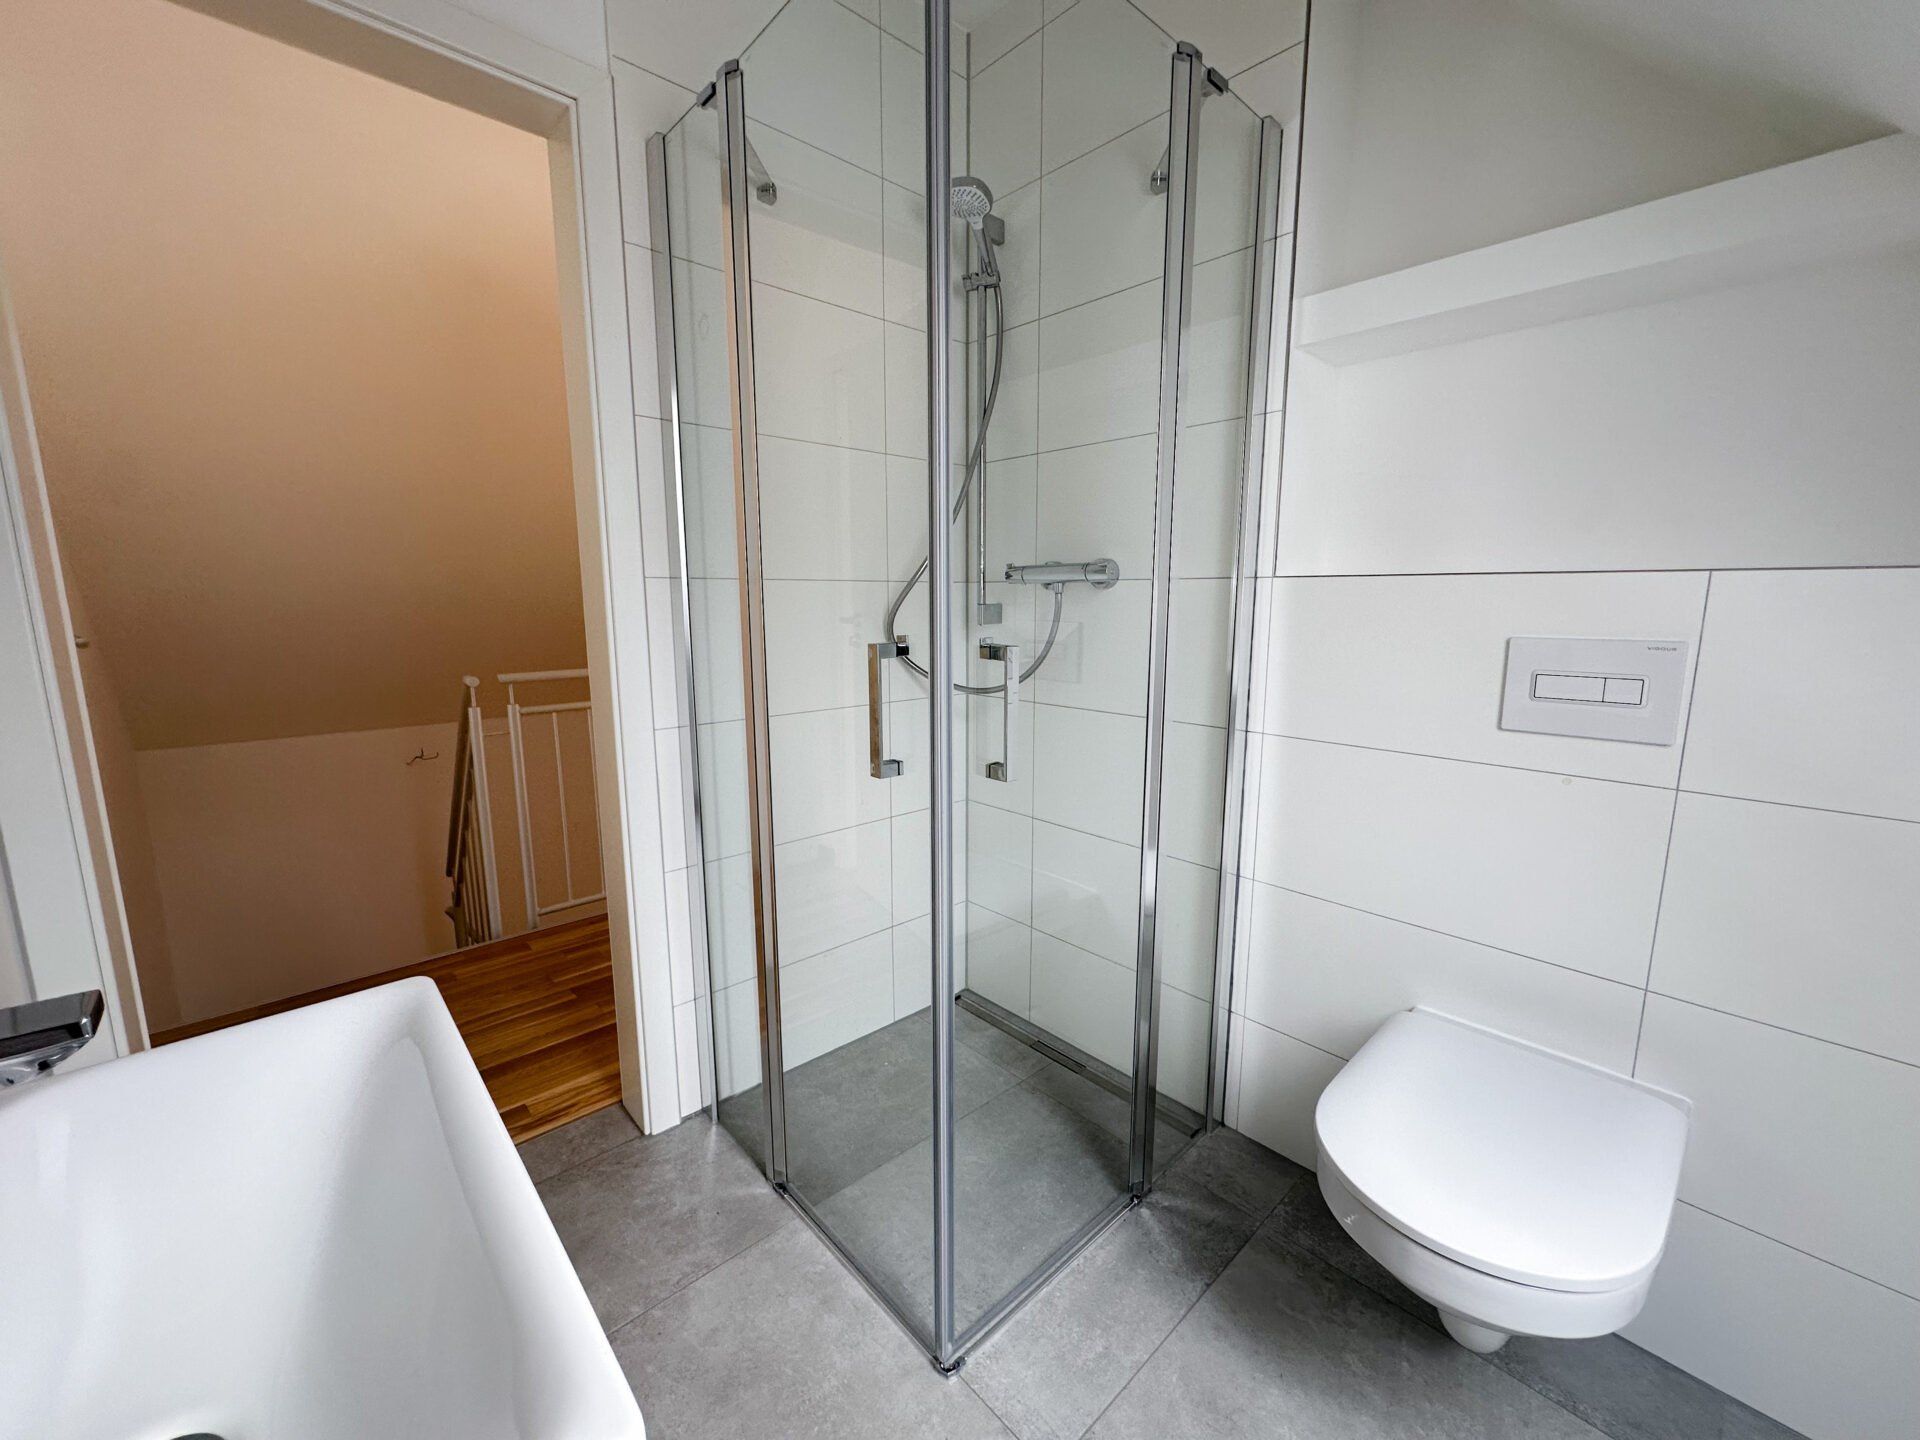 Badezimmer mit ebenerdiger Dusche - Referenzbild